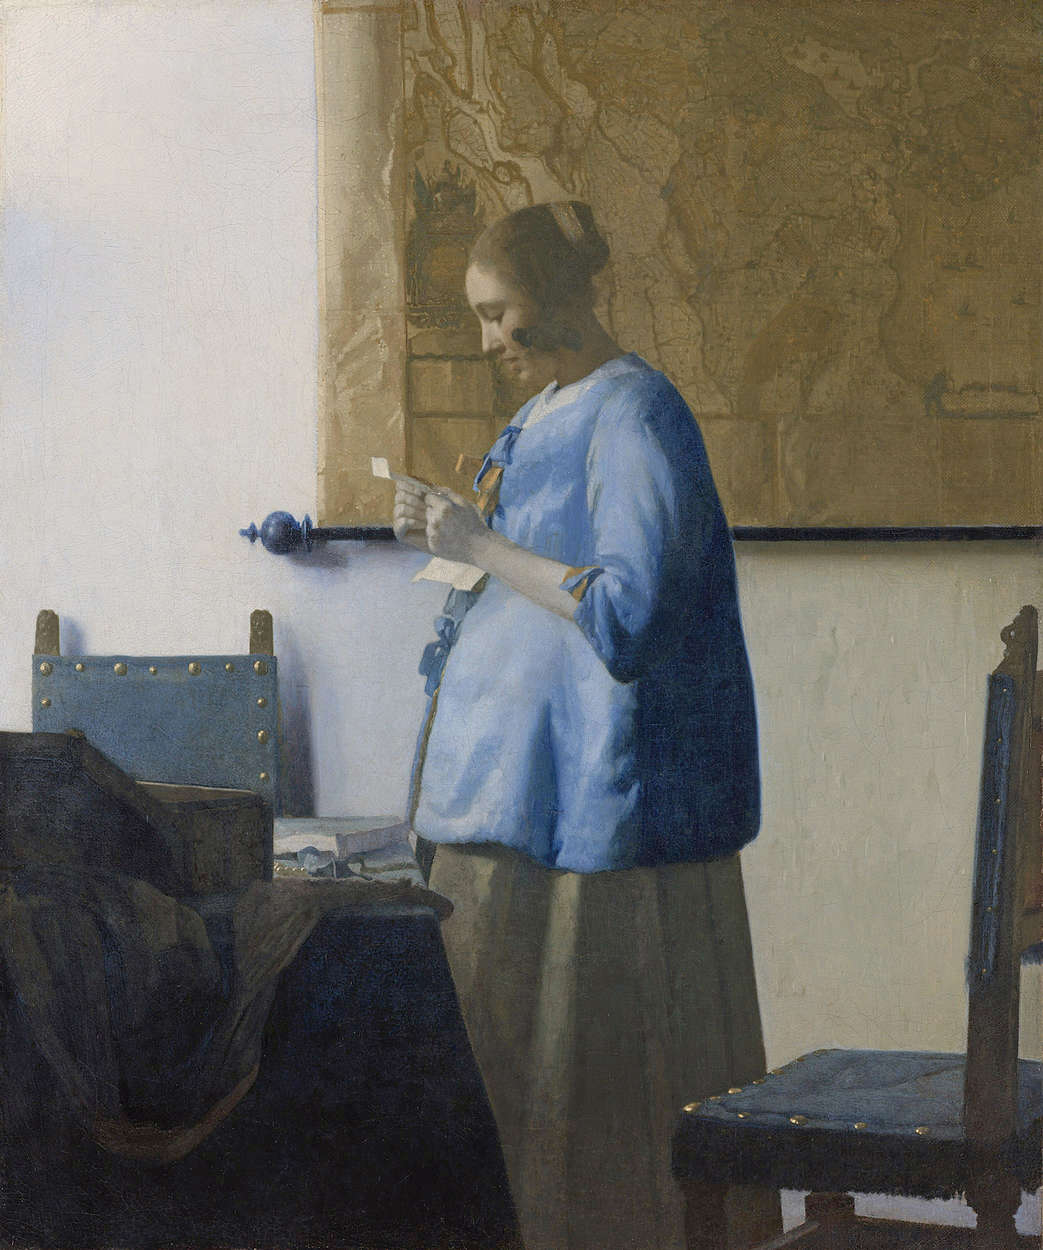             Papier peint panoramique "Femme lisant une lettre" de Jan Vermeer
        